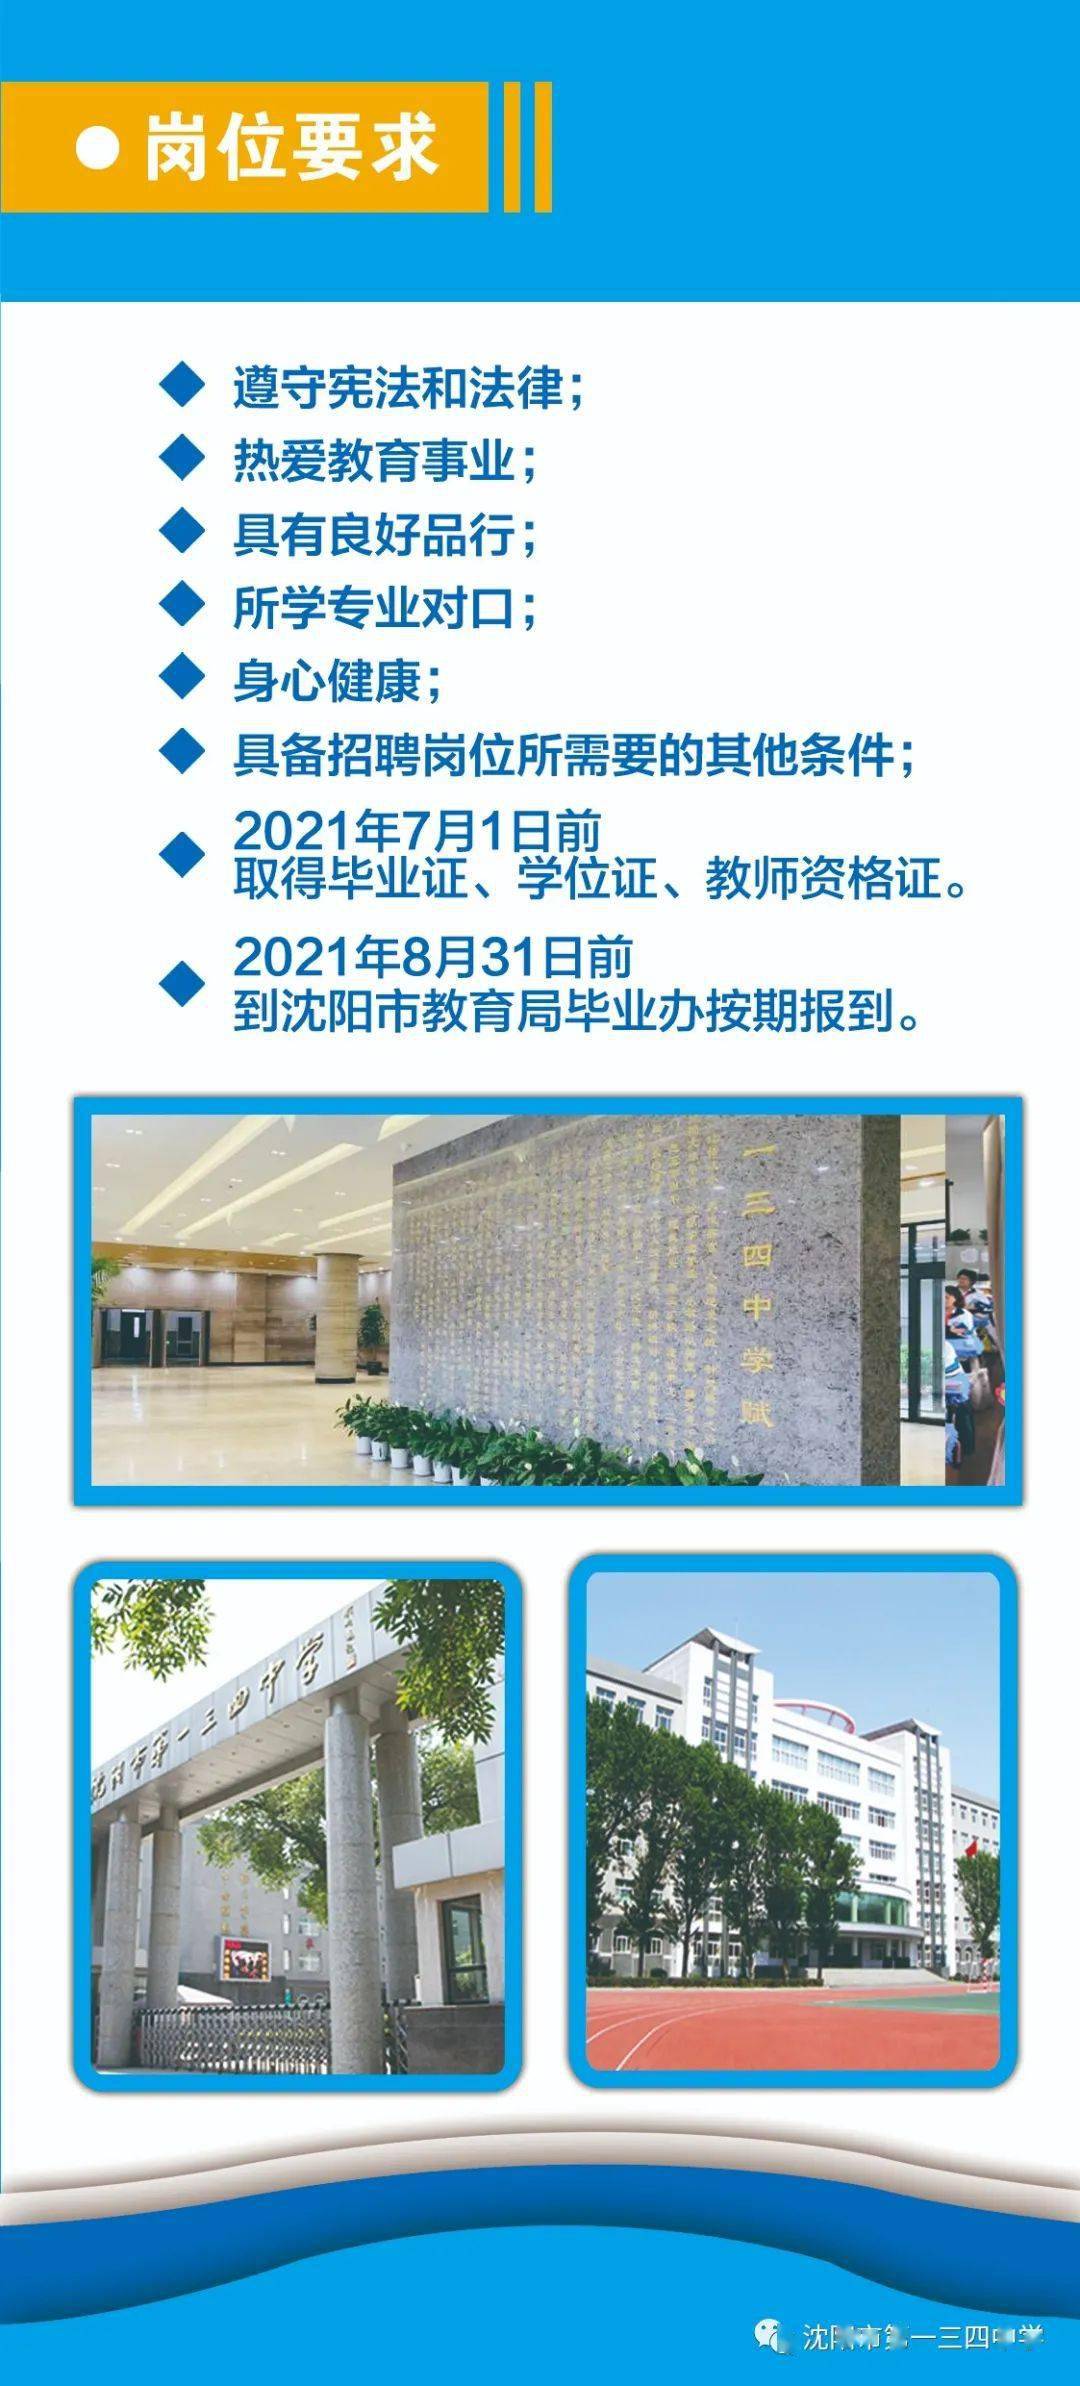 沈阳市第一三四中学2020年教师招聘信息